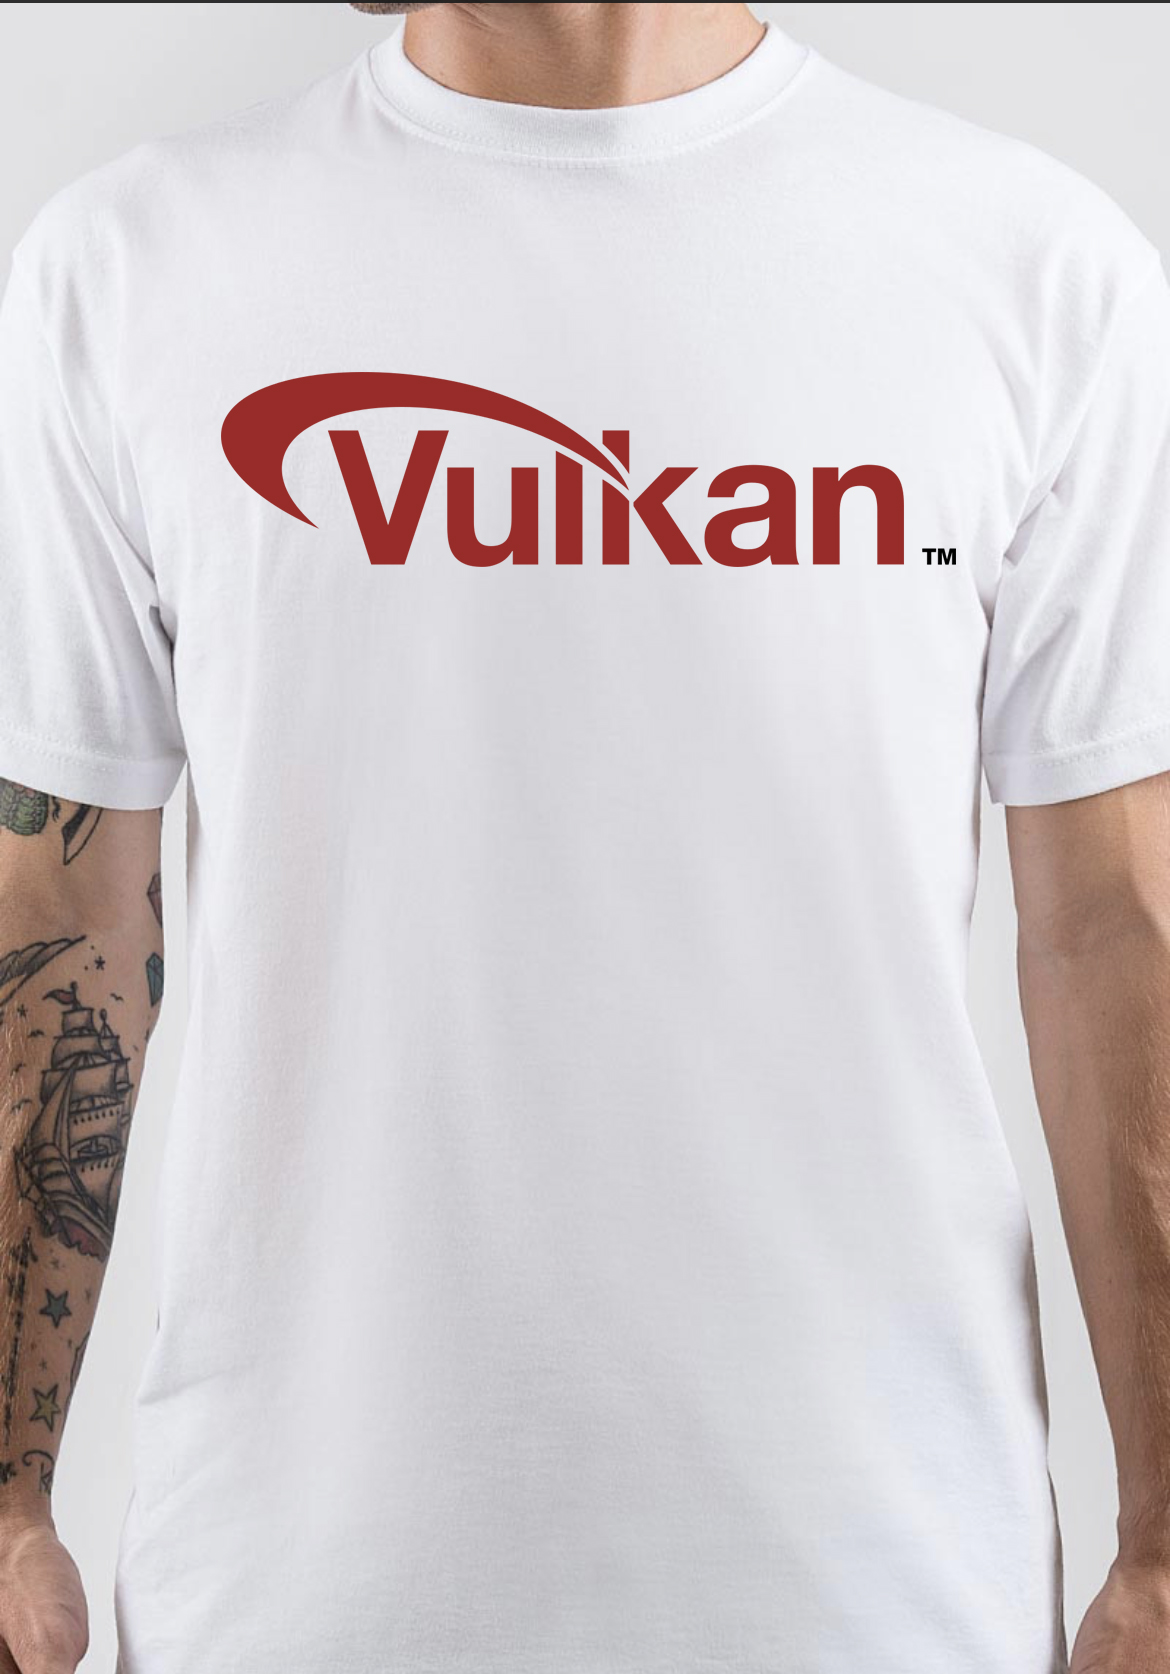 Vulkan T-Shirt And Merchandise